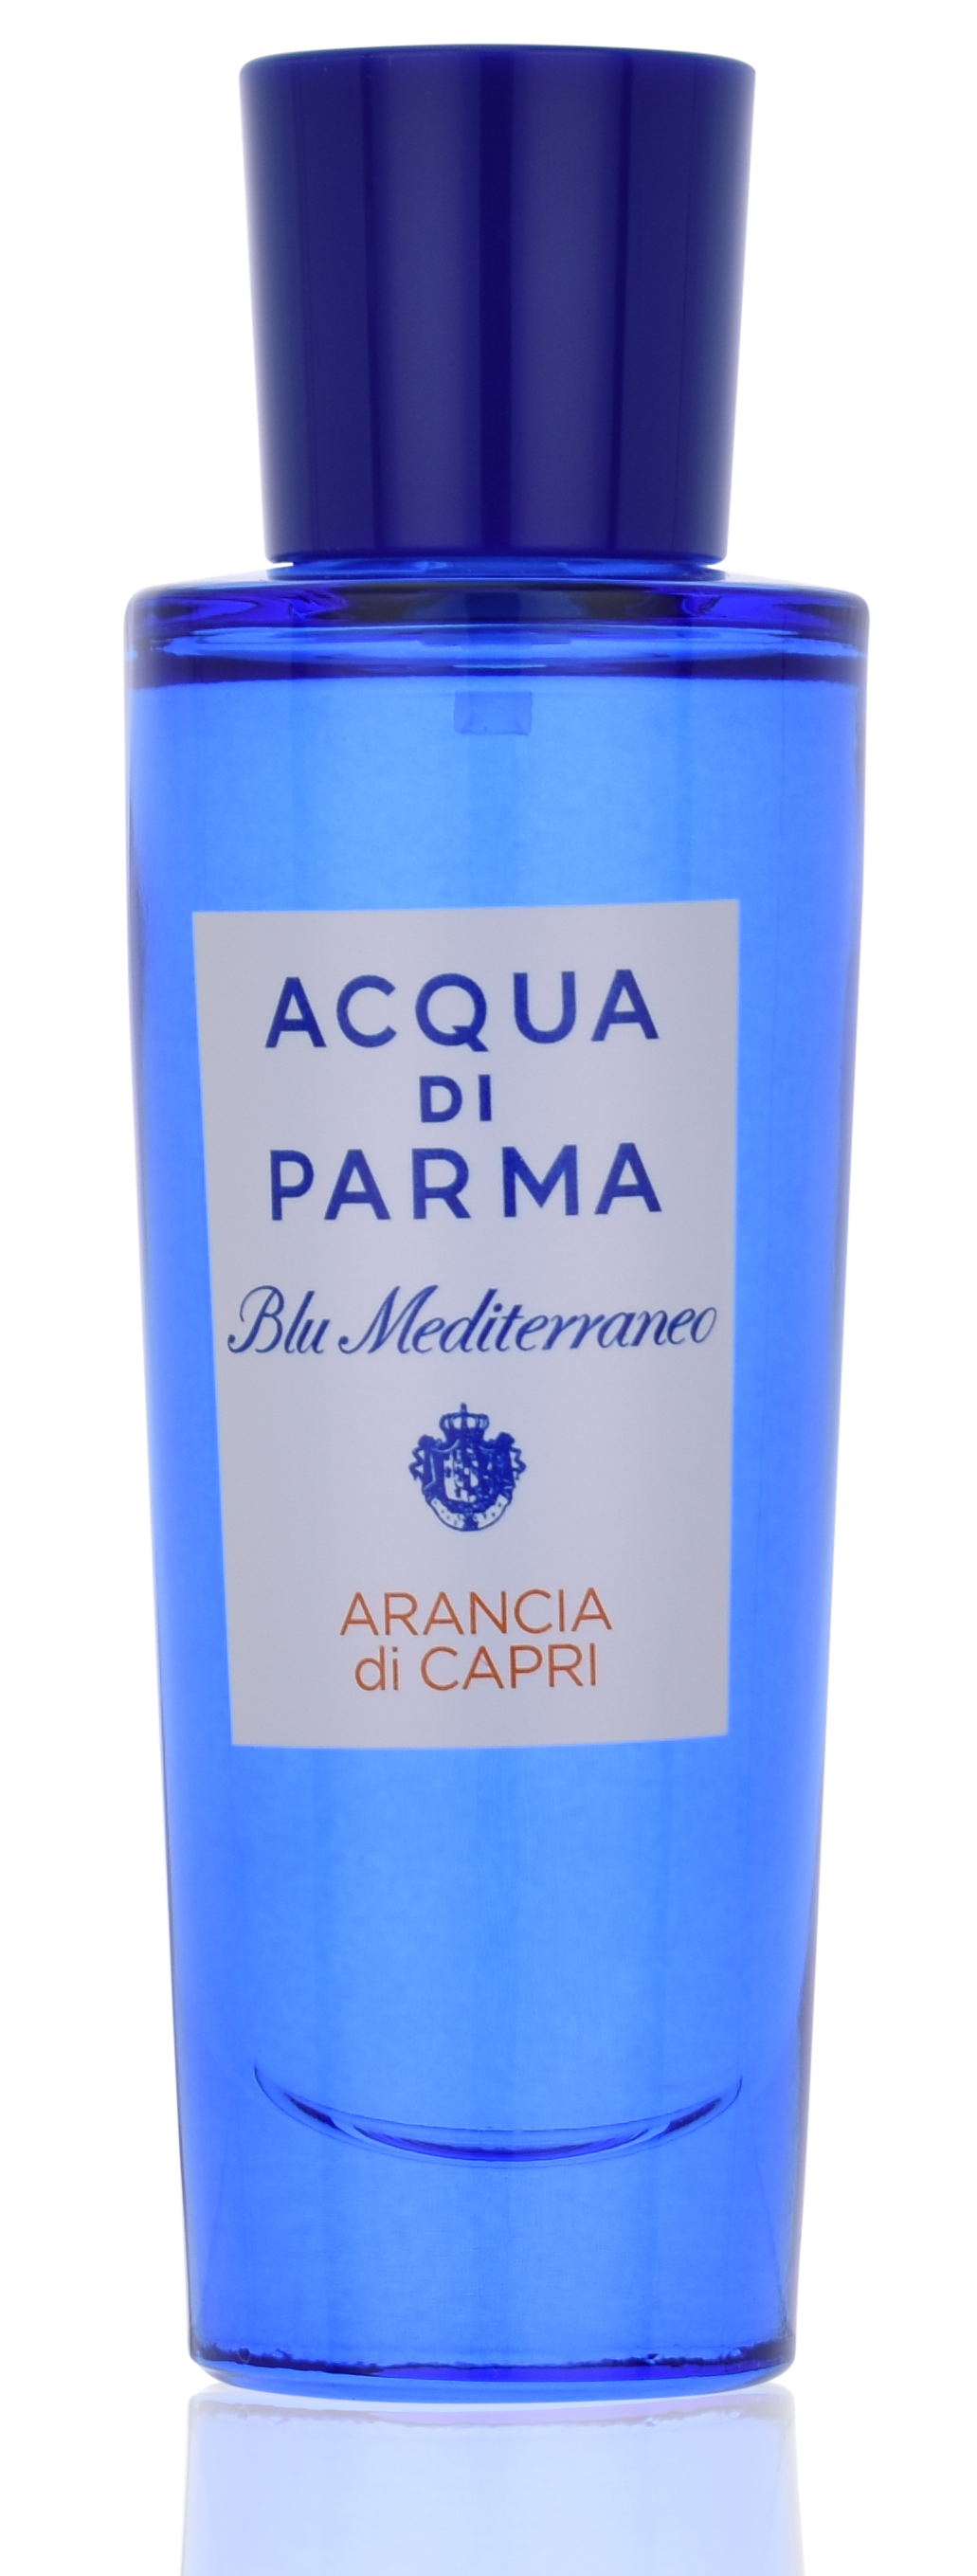 Acqua di Parma Blu Mediterraneo Arancia di Capri 30 ml Eau de Toilette